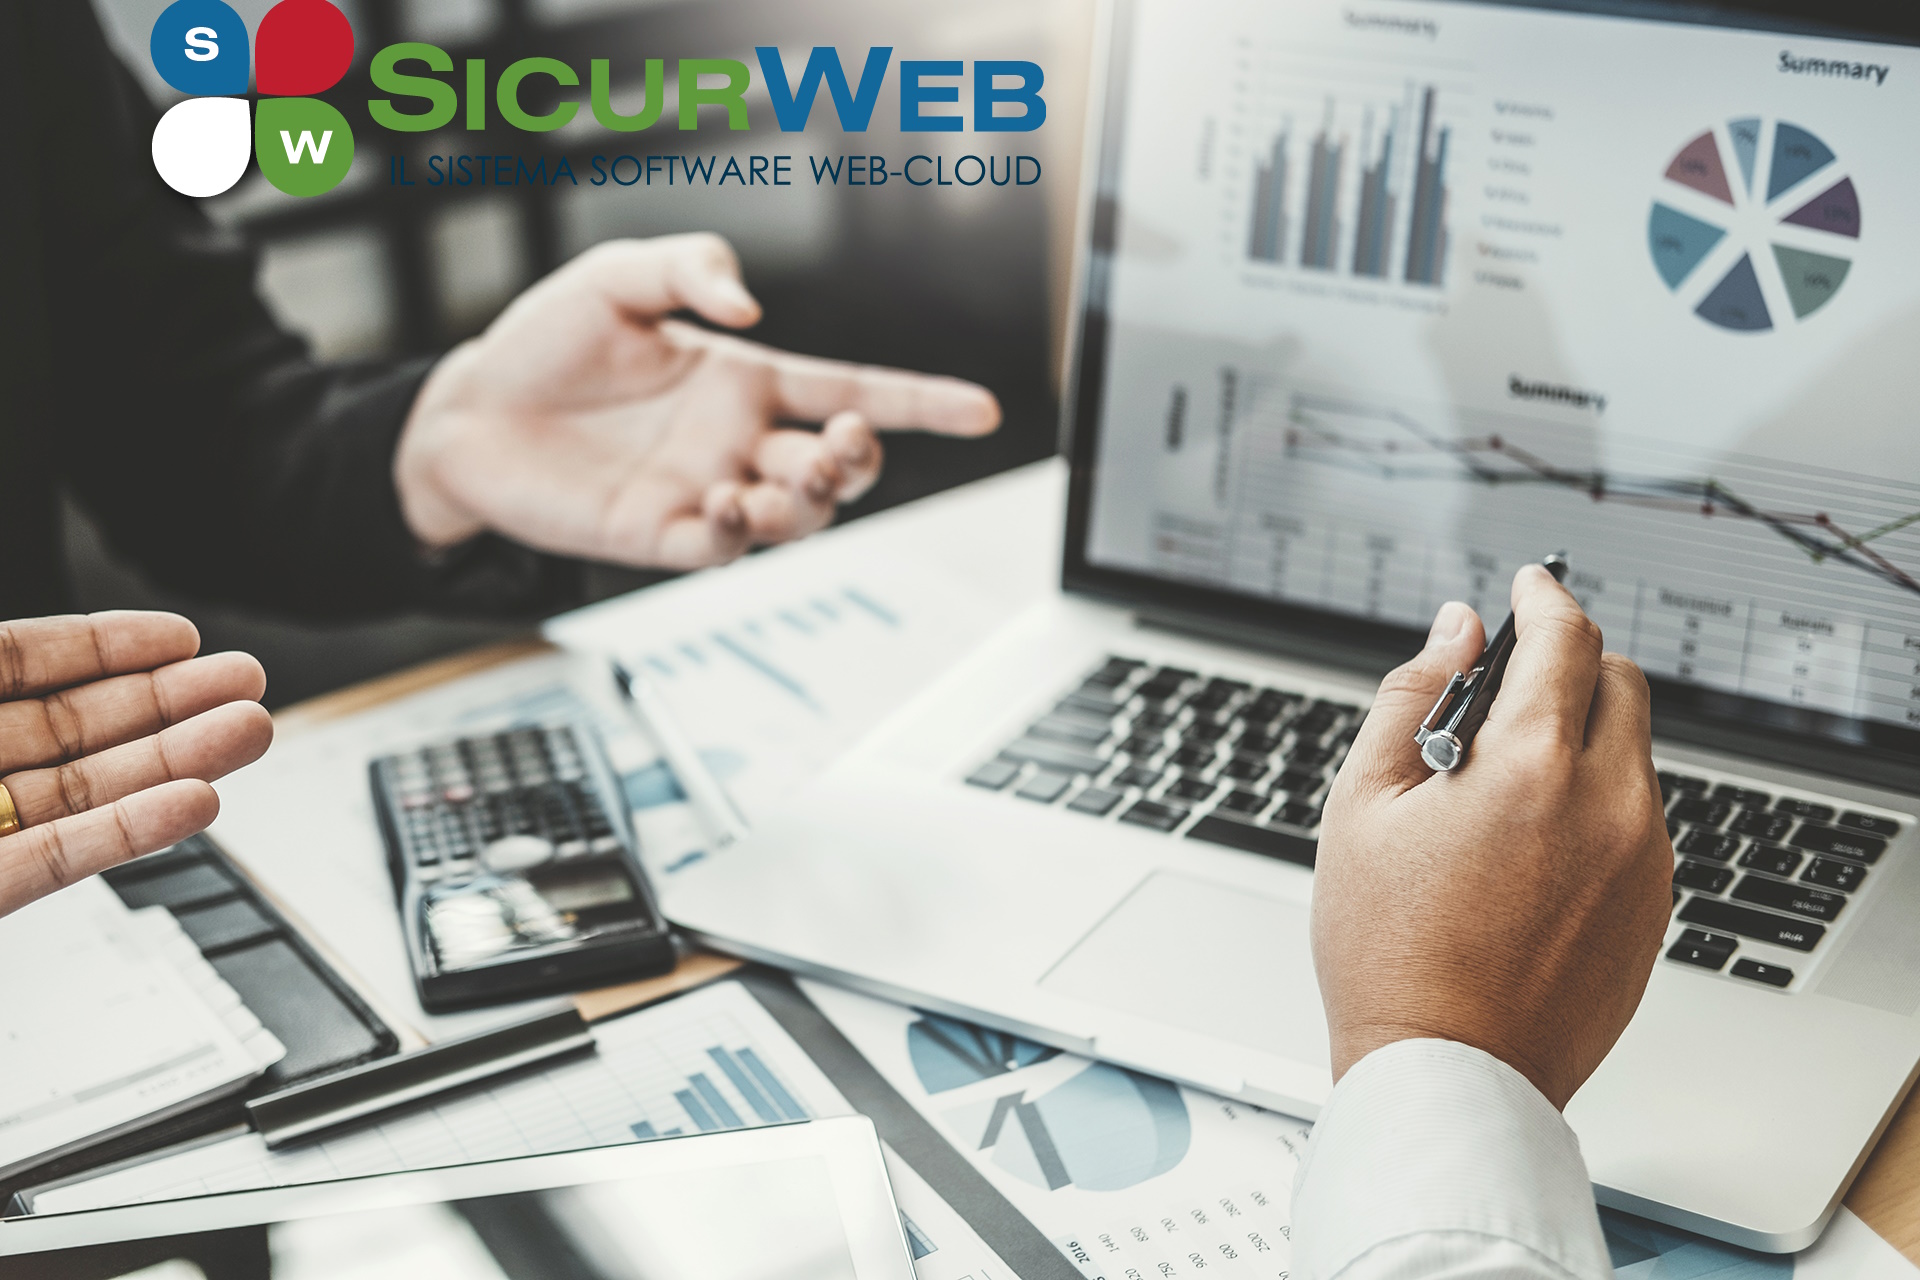 Sicurweb è una piattaforma online all-in-one per l'ambiente, la salute e la sicurezza (EHS) che consente alle organizzazioni di inserire, accedere e segnalare i dati EHS in tempo reale. La suite software copre tutta la conformità EHS, oltre ad altre funzionalità come la gestione dei fornitori e dei visitatori.